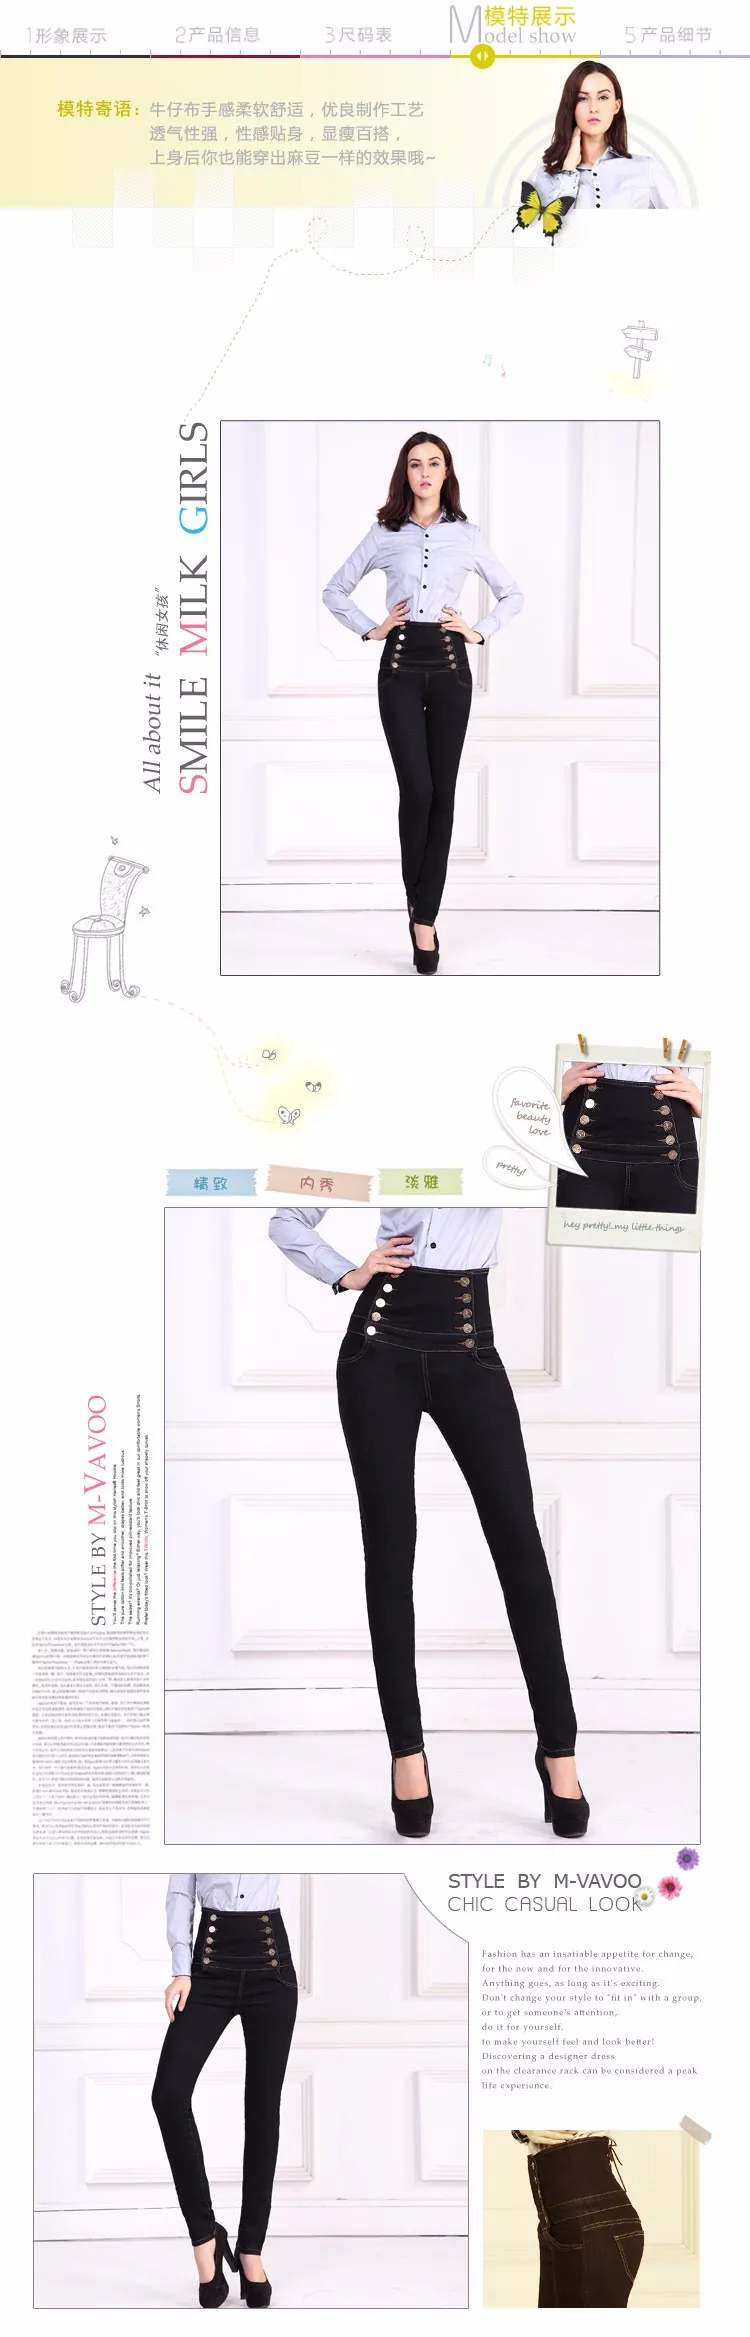 Dongkuan женские джинсы с эластичной резинкой на талии тонкие леггинсы узкие брюки Брюки Большие размеры